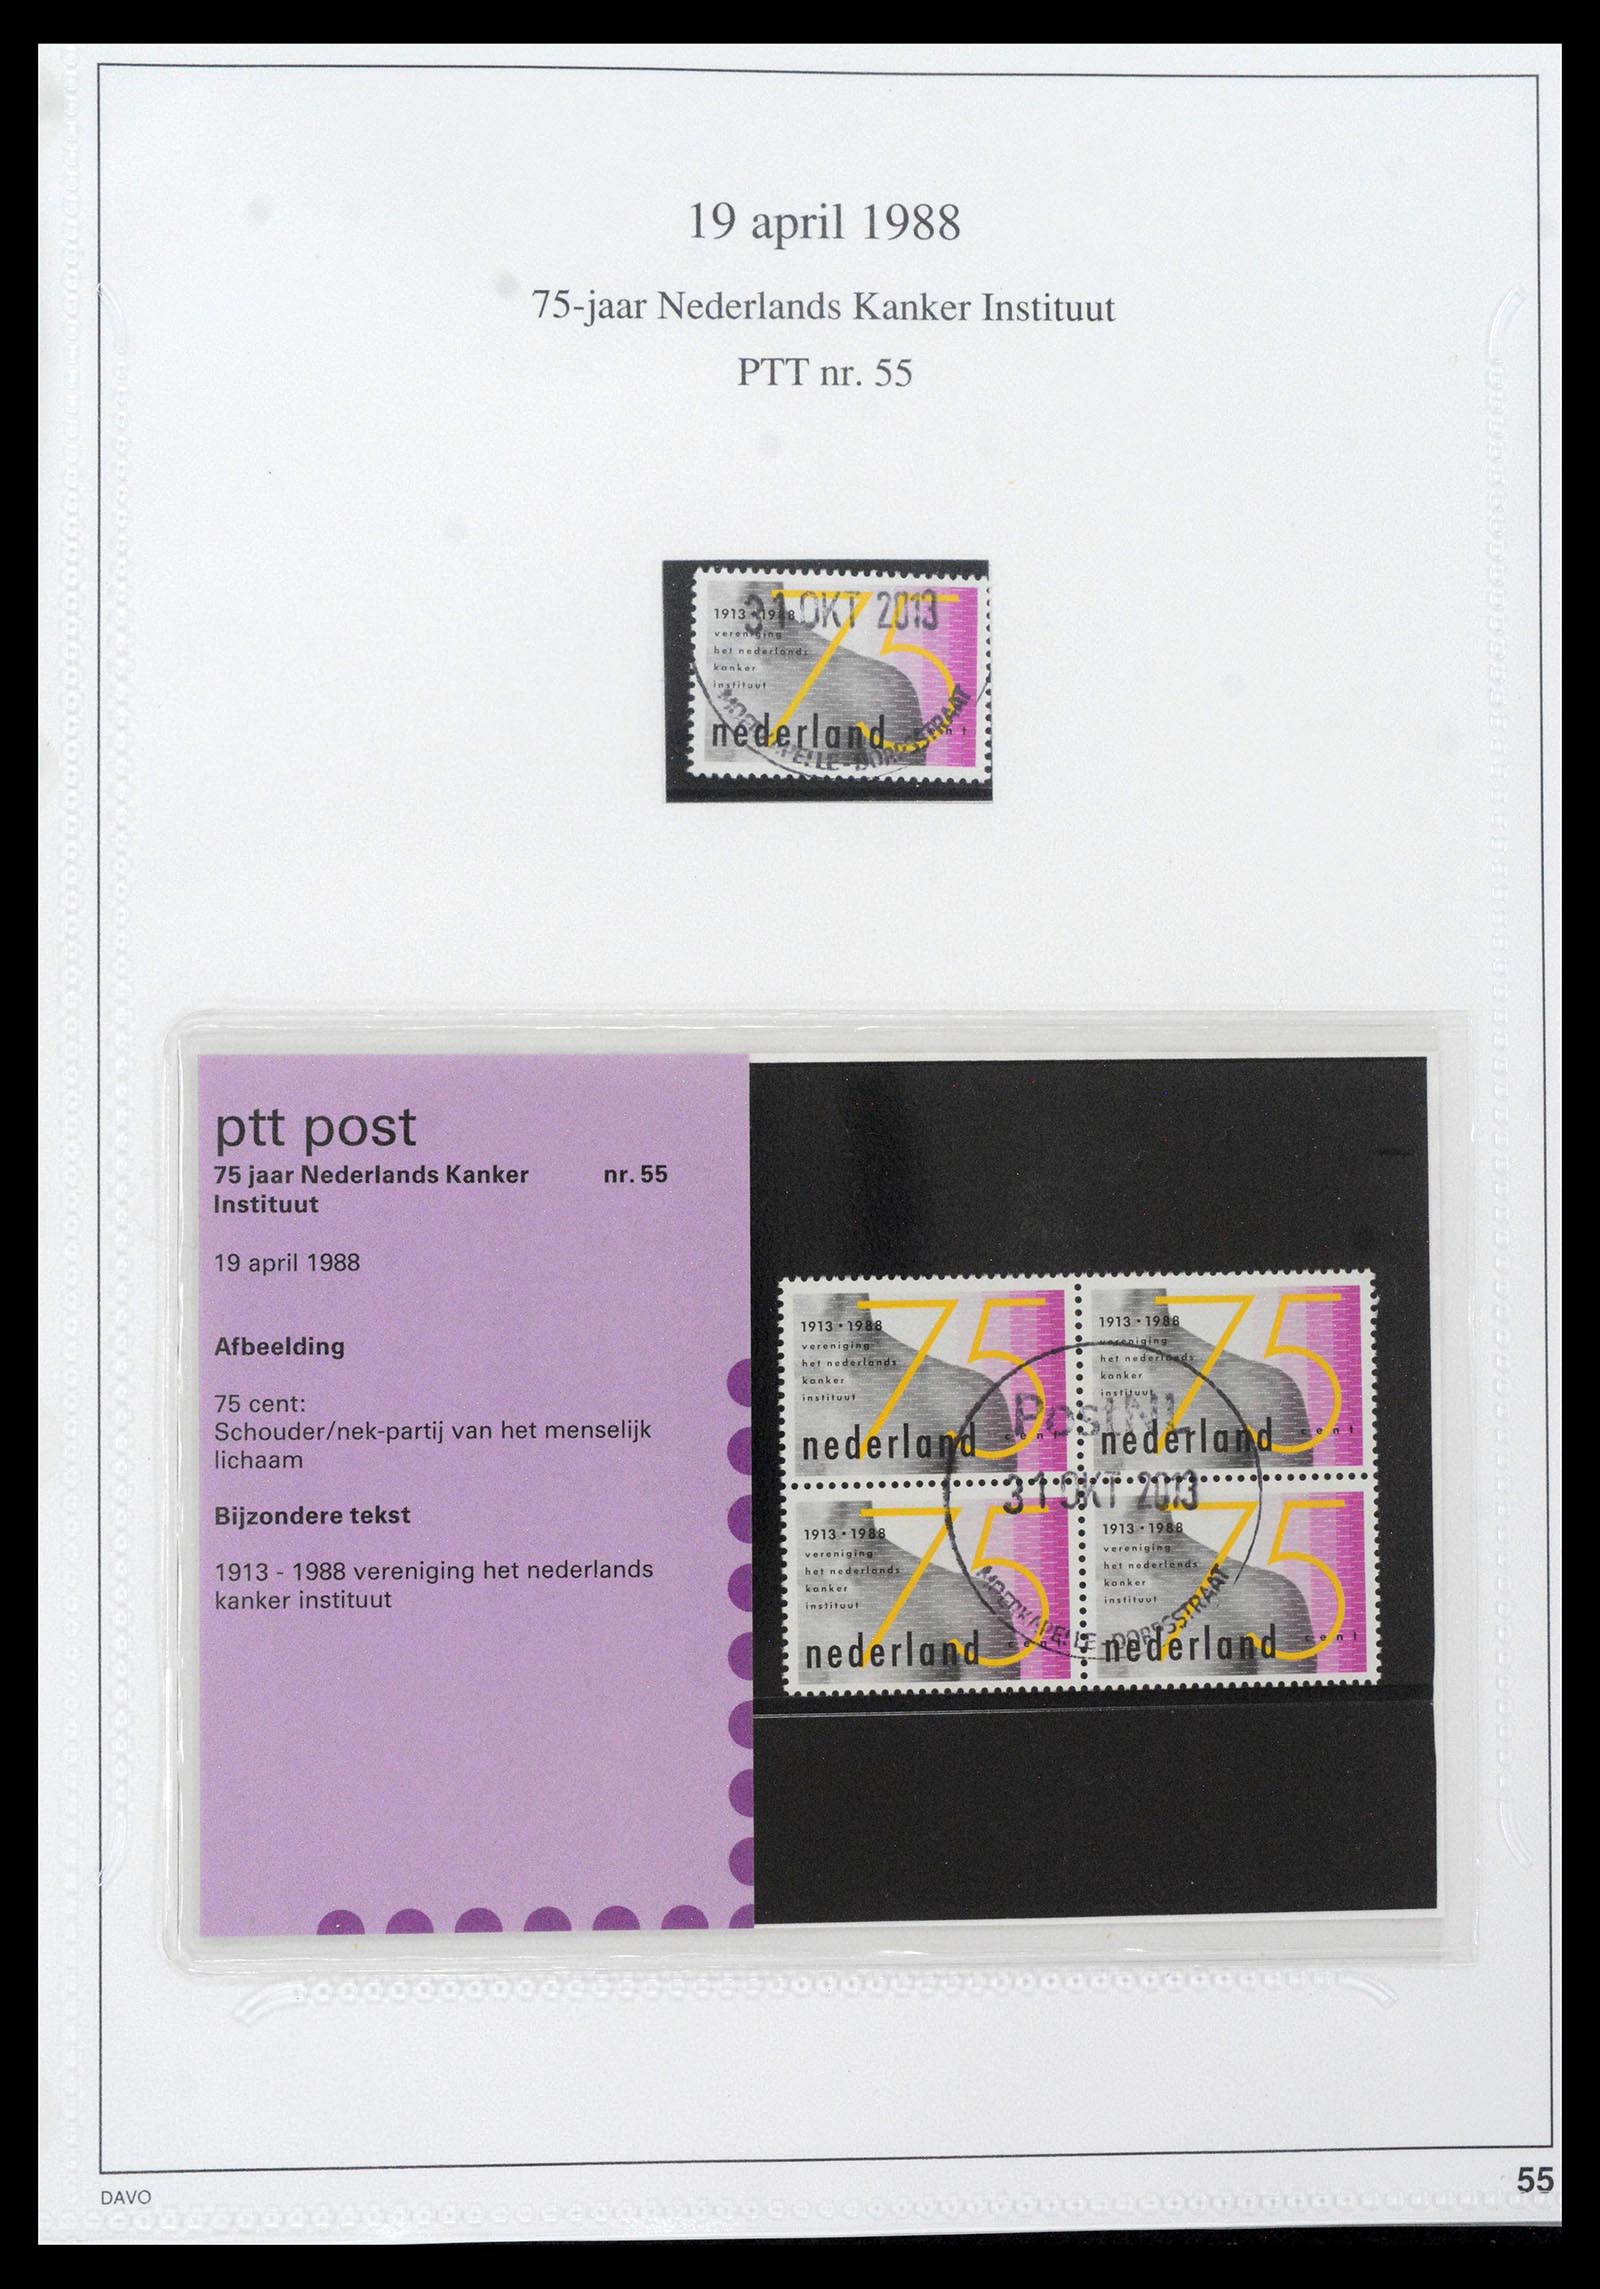 39121 0055 - Stamp collection 39121 Netherlands presentationpacks 1982-2001.